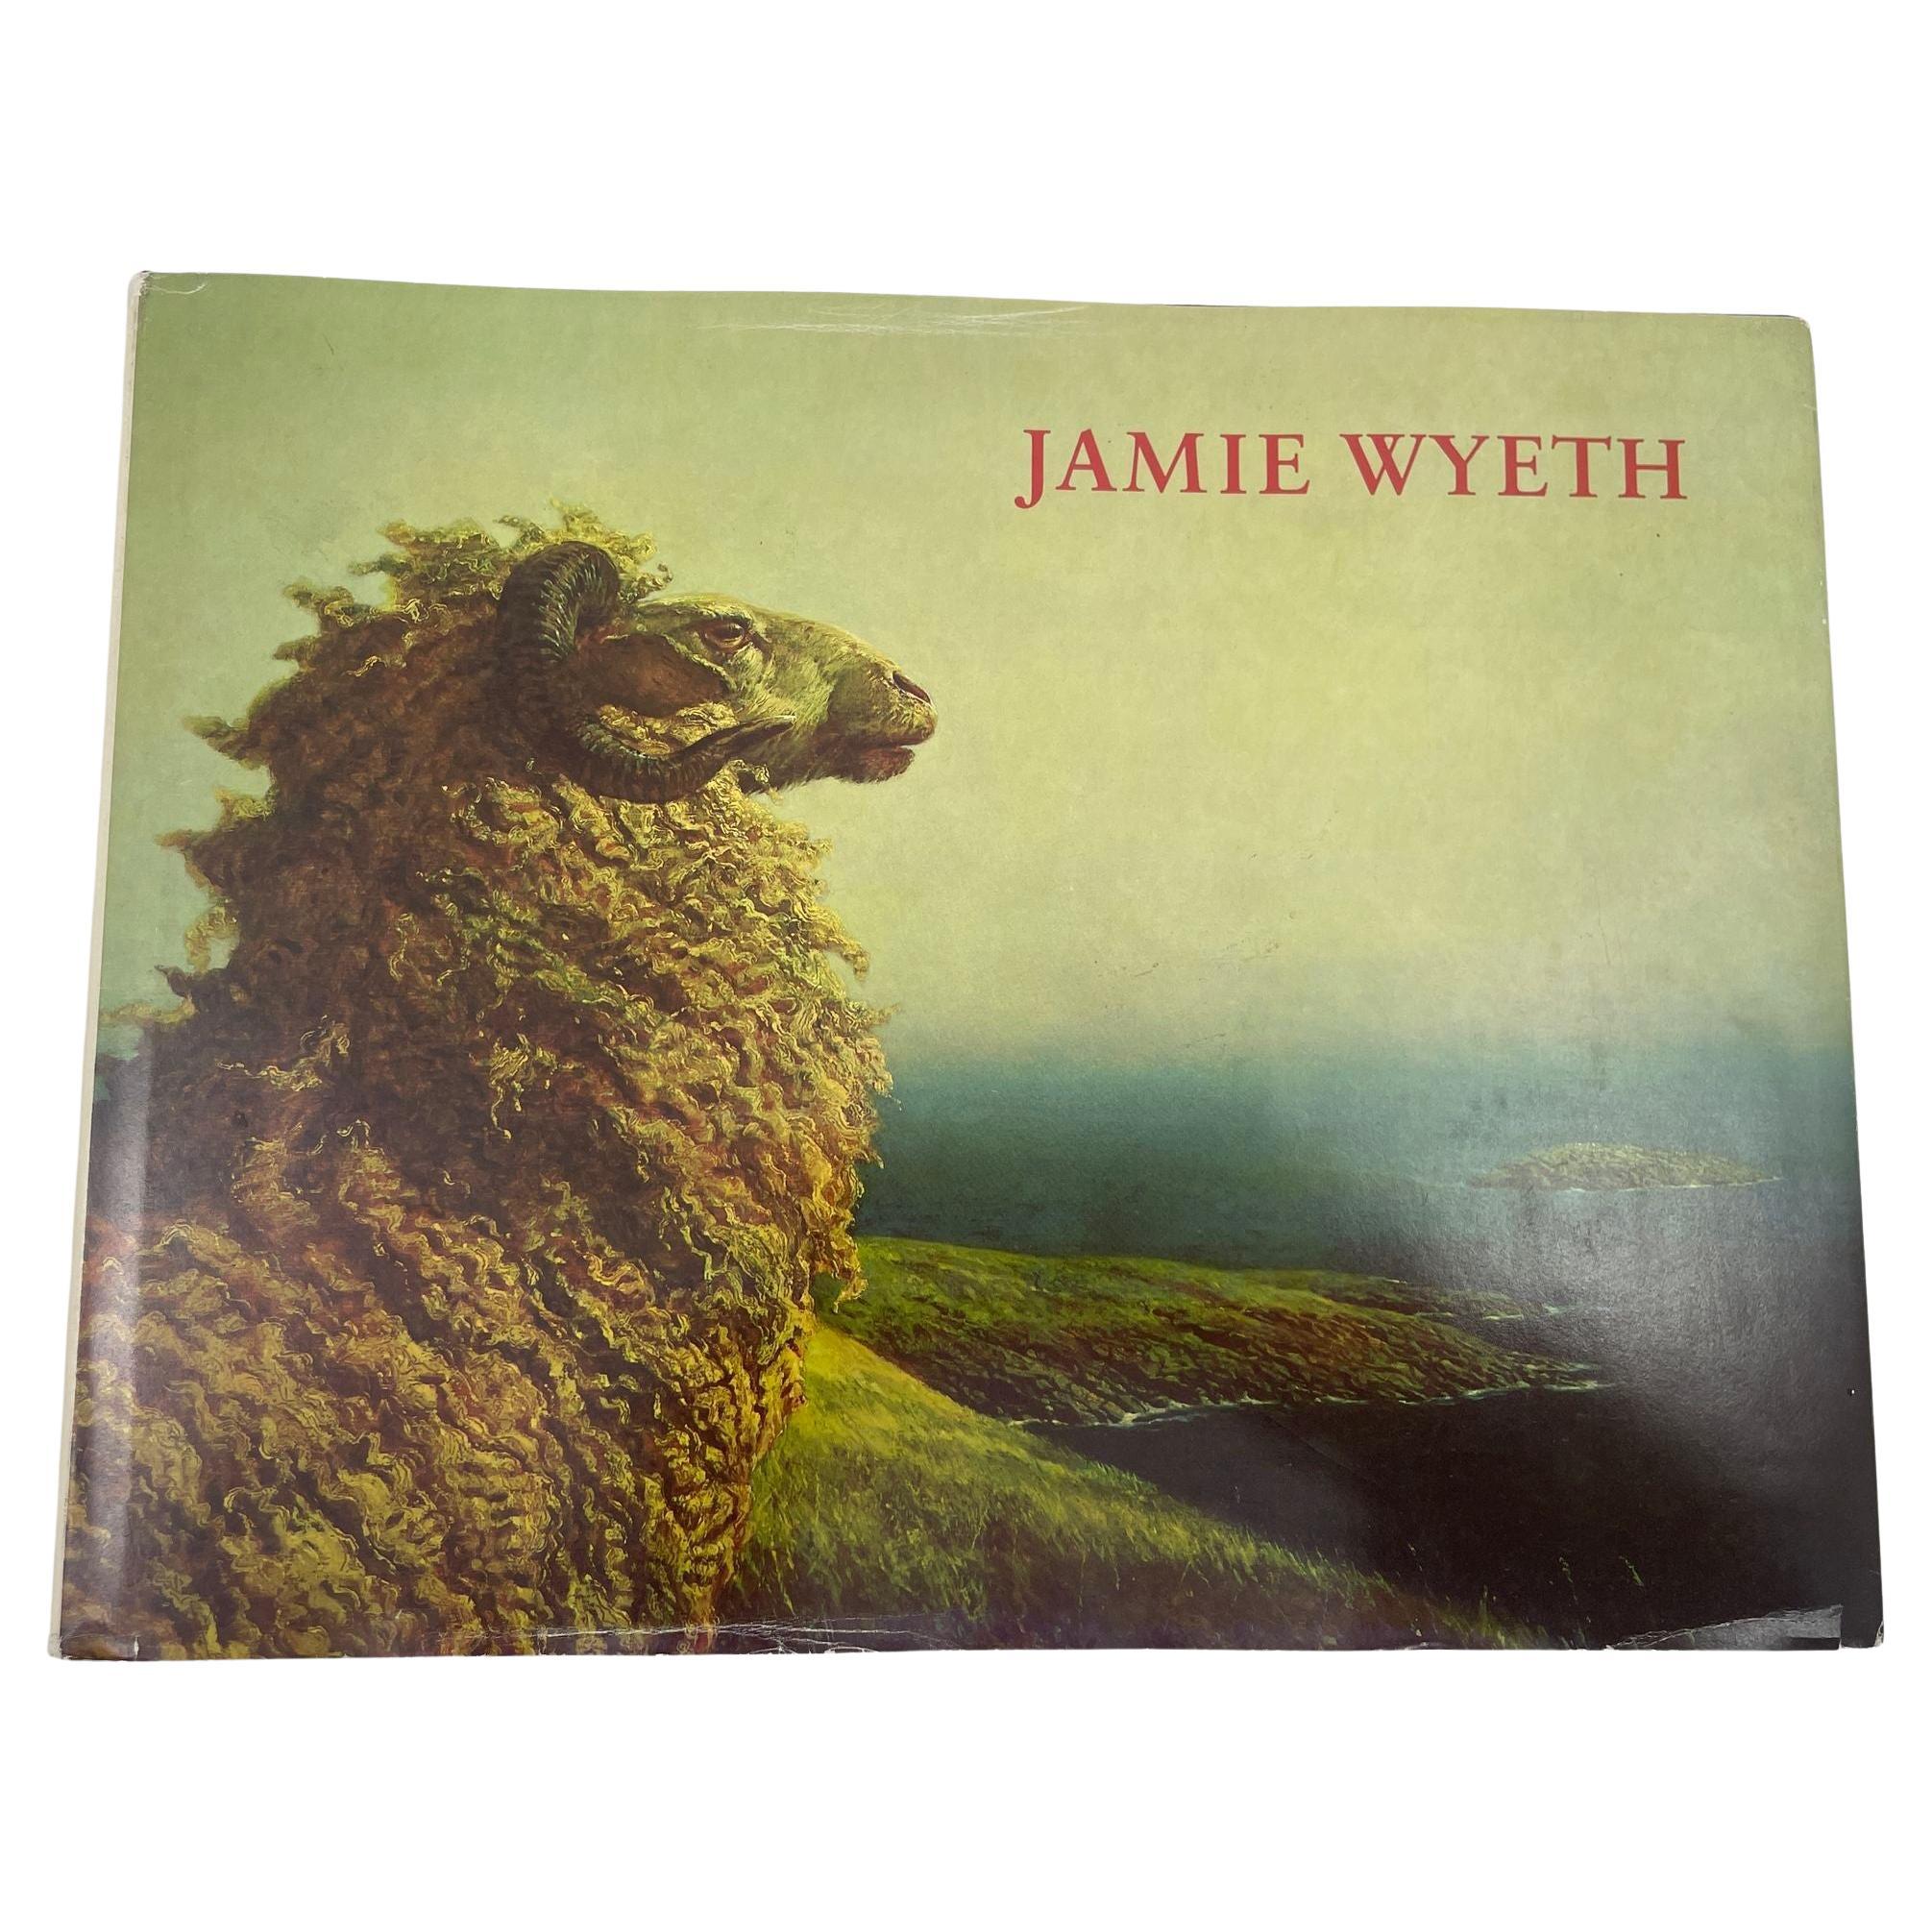 Jamie Wyeth by Jamie Wyeth Hardcover Book 1980 1st Ed.